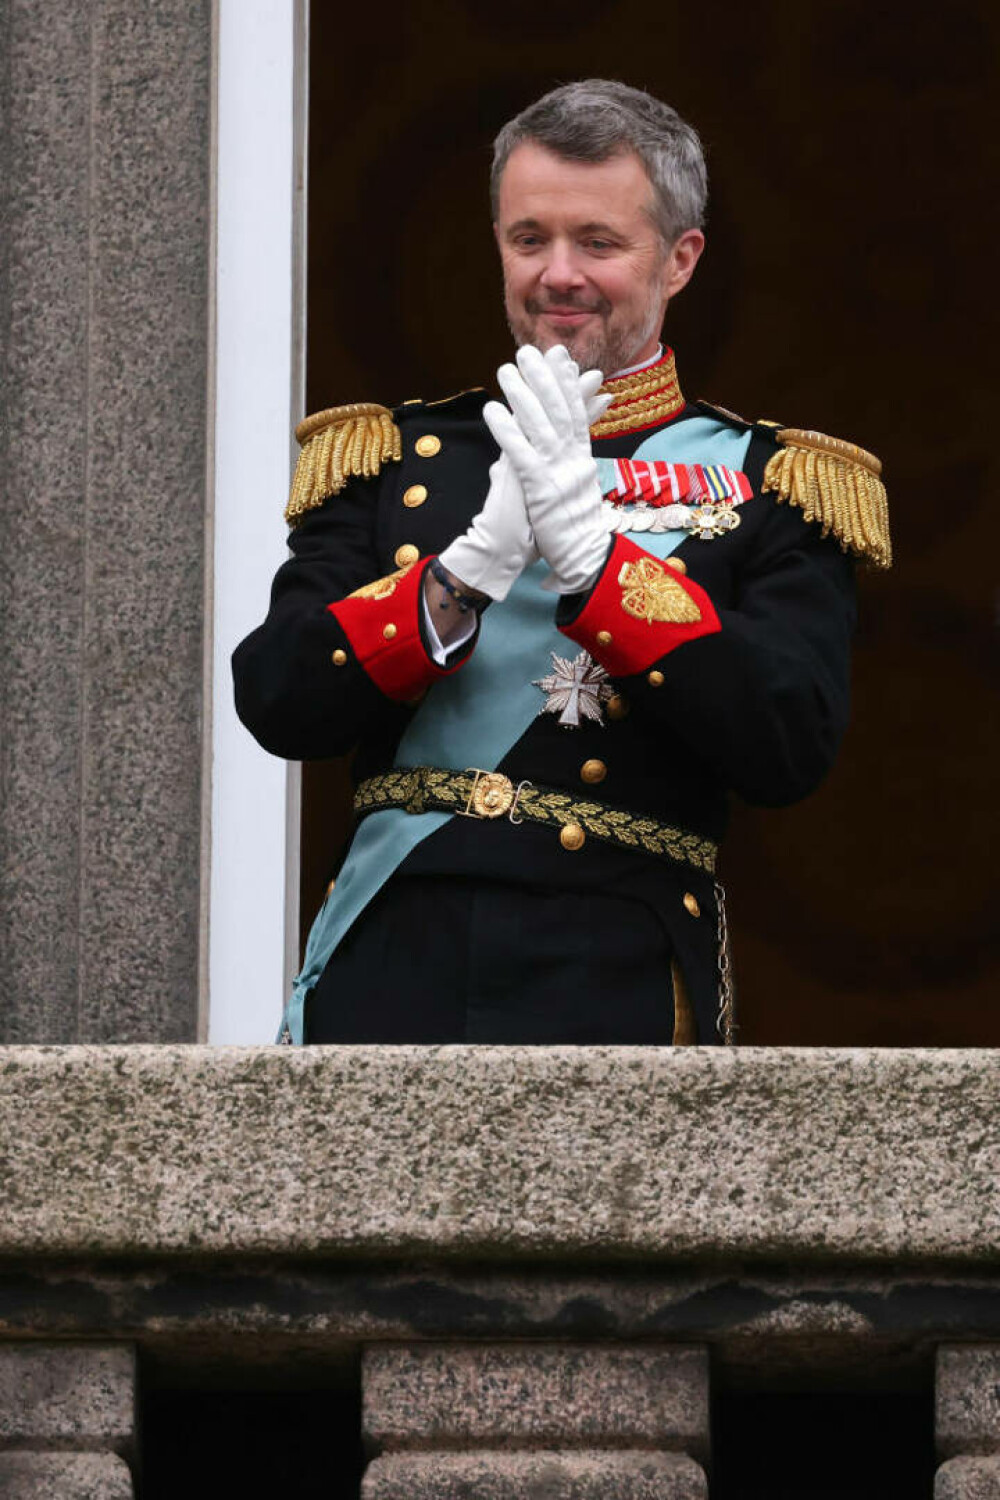 Regele Frederik al X-lea. Cine este fostul „prinț al petrecerilor”, actualul monarh al Danemarcei | FOTO - Imaginea 10